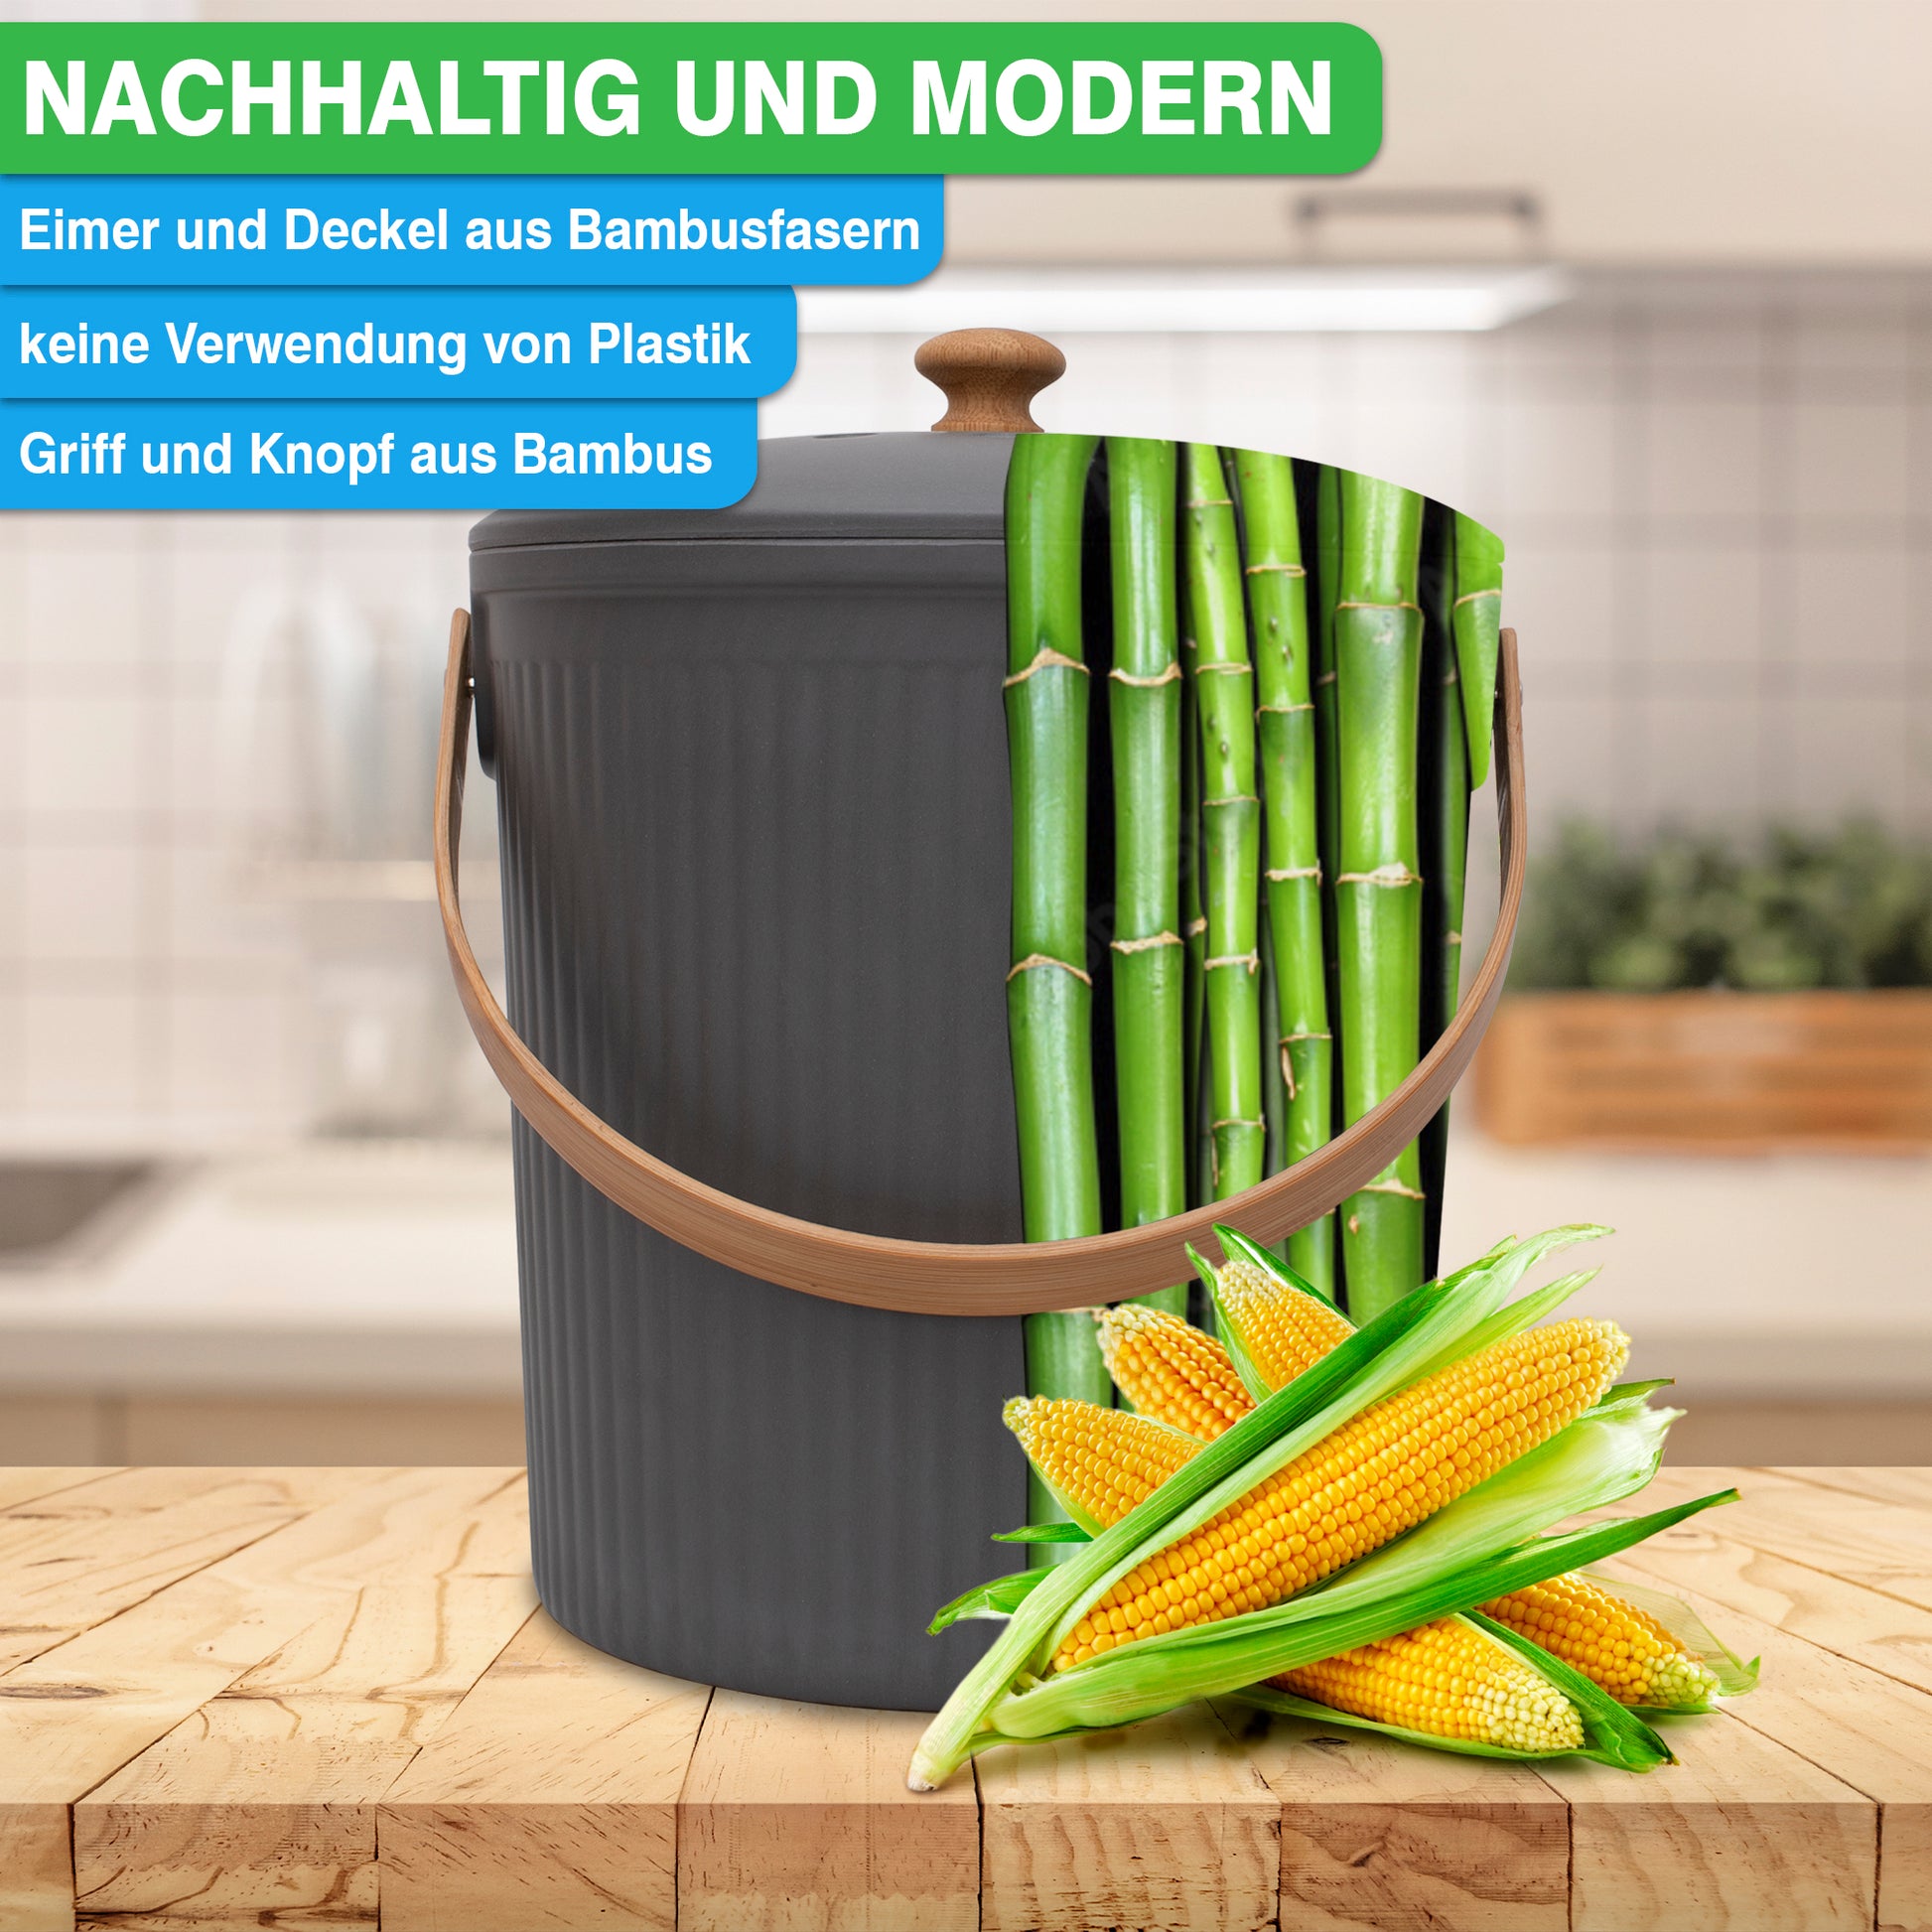 Moderner YourCasa® Komposteimer Küche – 6L – aus Bambusfaser auf einer Küchenarbeitsplatte mit Maiskolben im Vordergrund und Bambuspflanzen im Hintergrund.